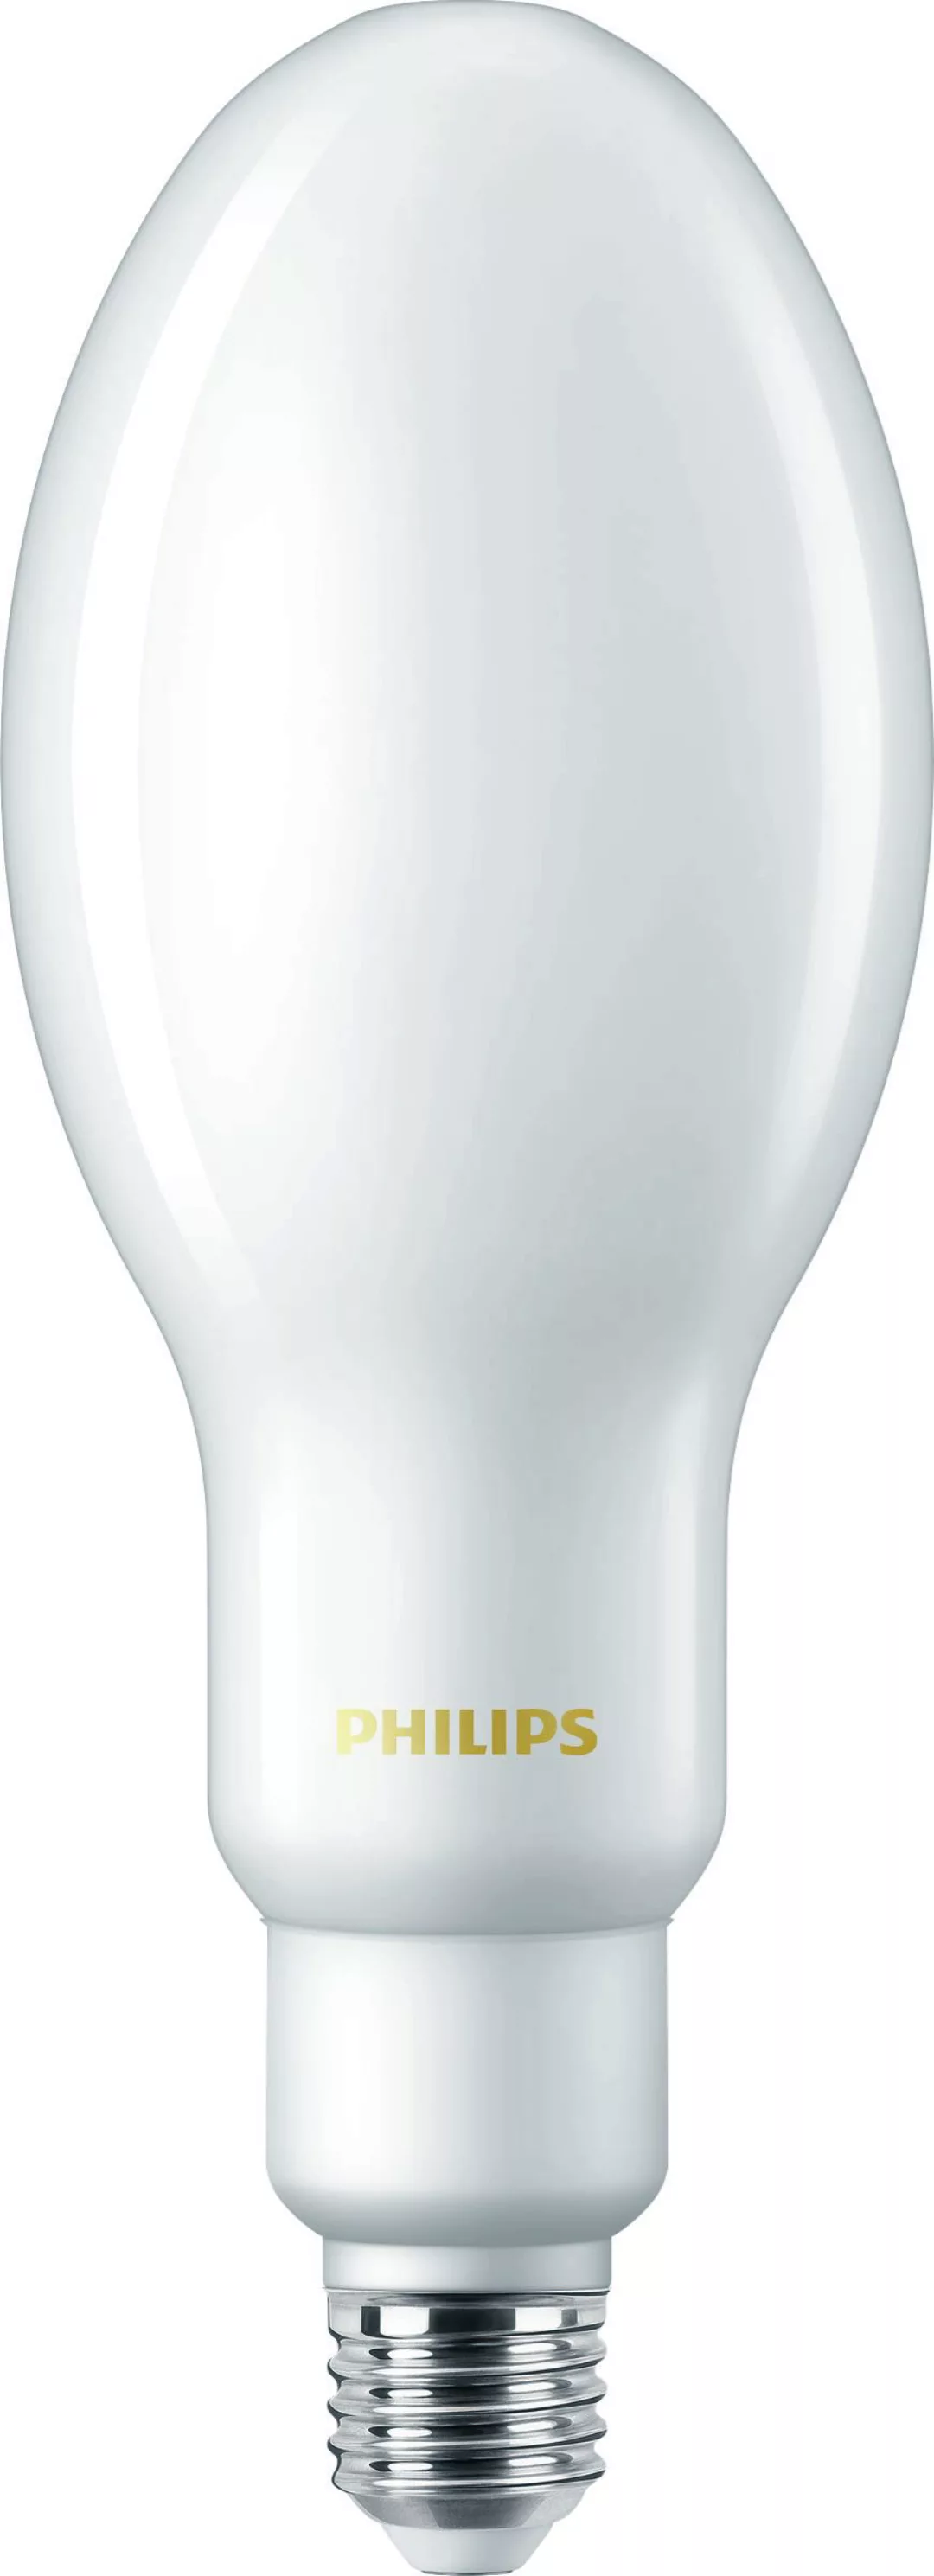 Philips Lighting LED-Lampe E27 4000K TForce Cor #75035000 günstig online kaufen